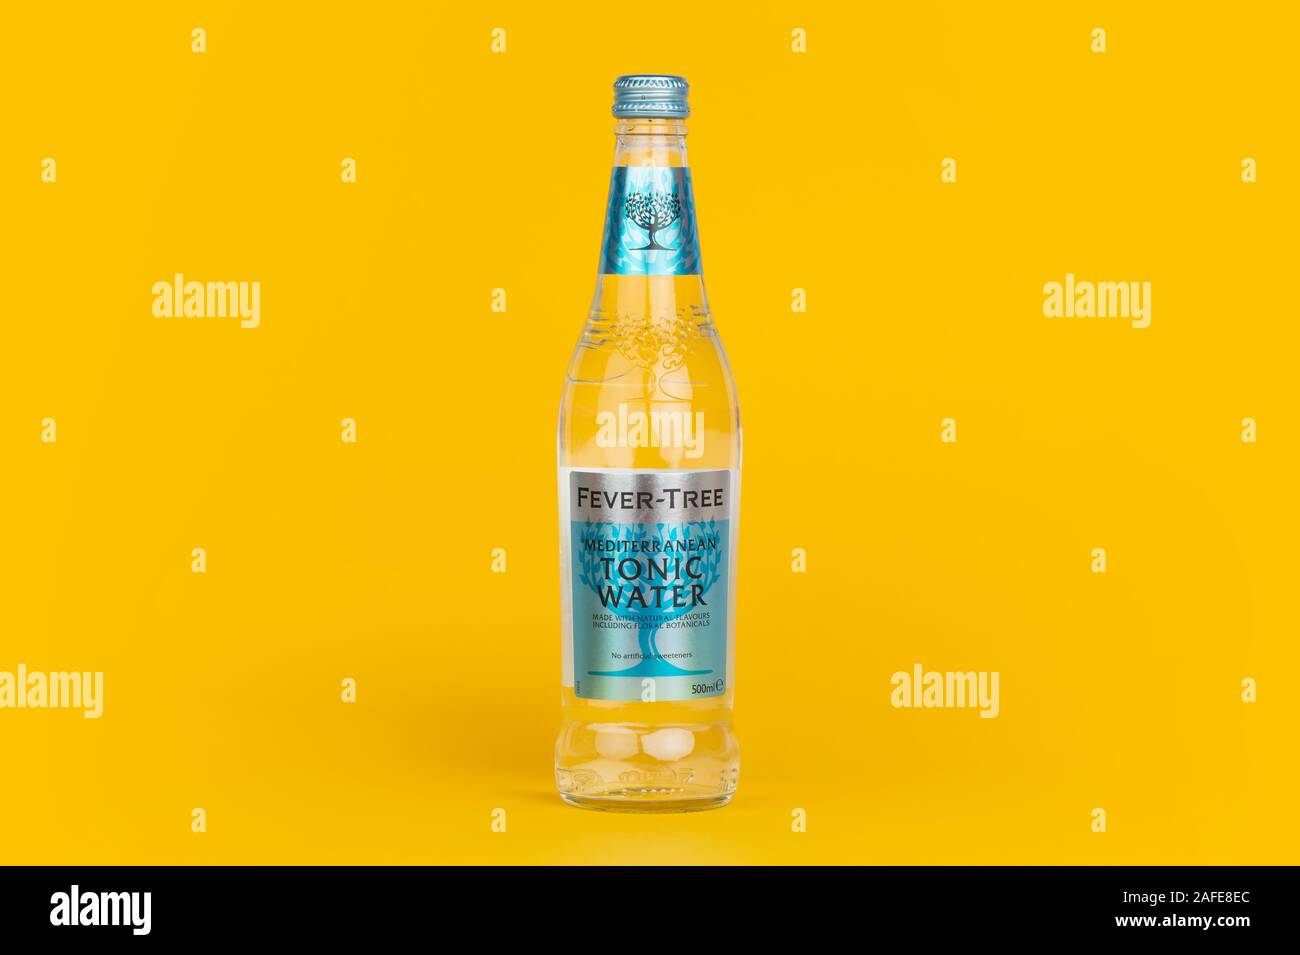 Eine Flasche Fever-Tree Tonic Water Schuß auf einen gelben Hintergrund. Stockfoto